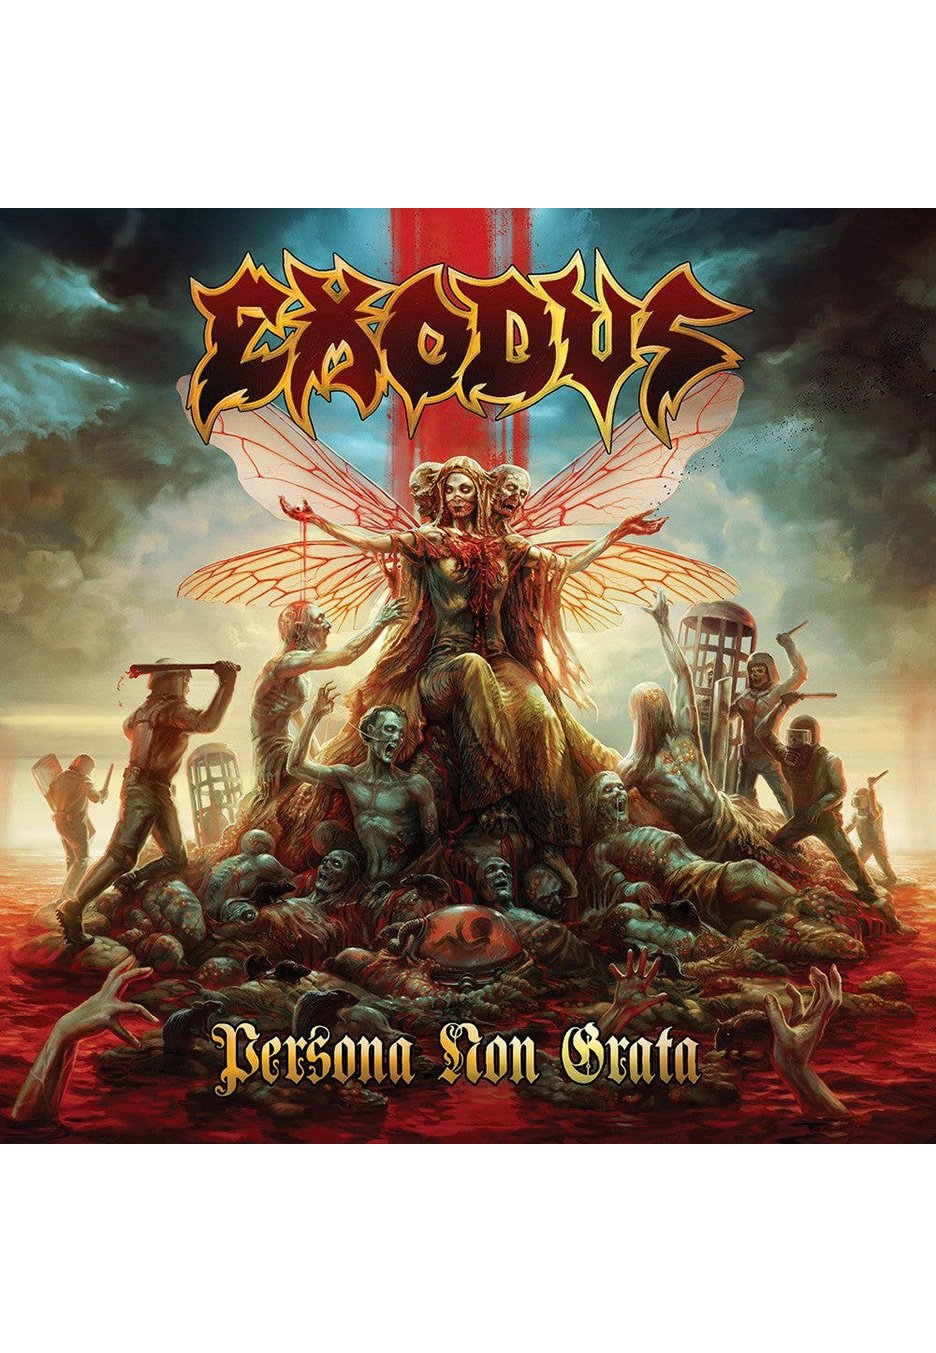 Exodus - Persona Non Grata Ltd. Red w/ Black - Splattered 2 Vinyl Boxset